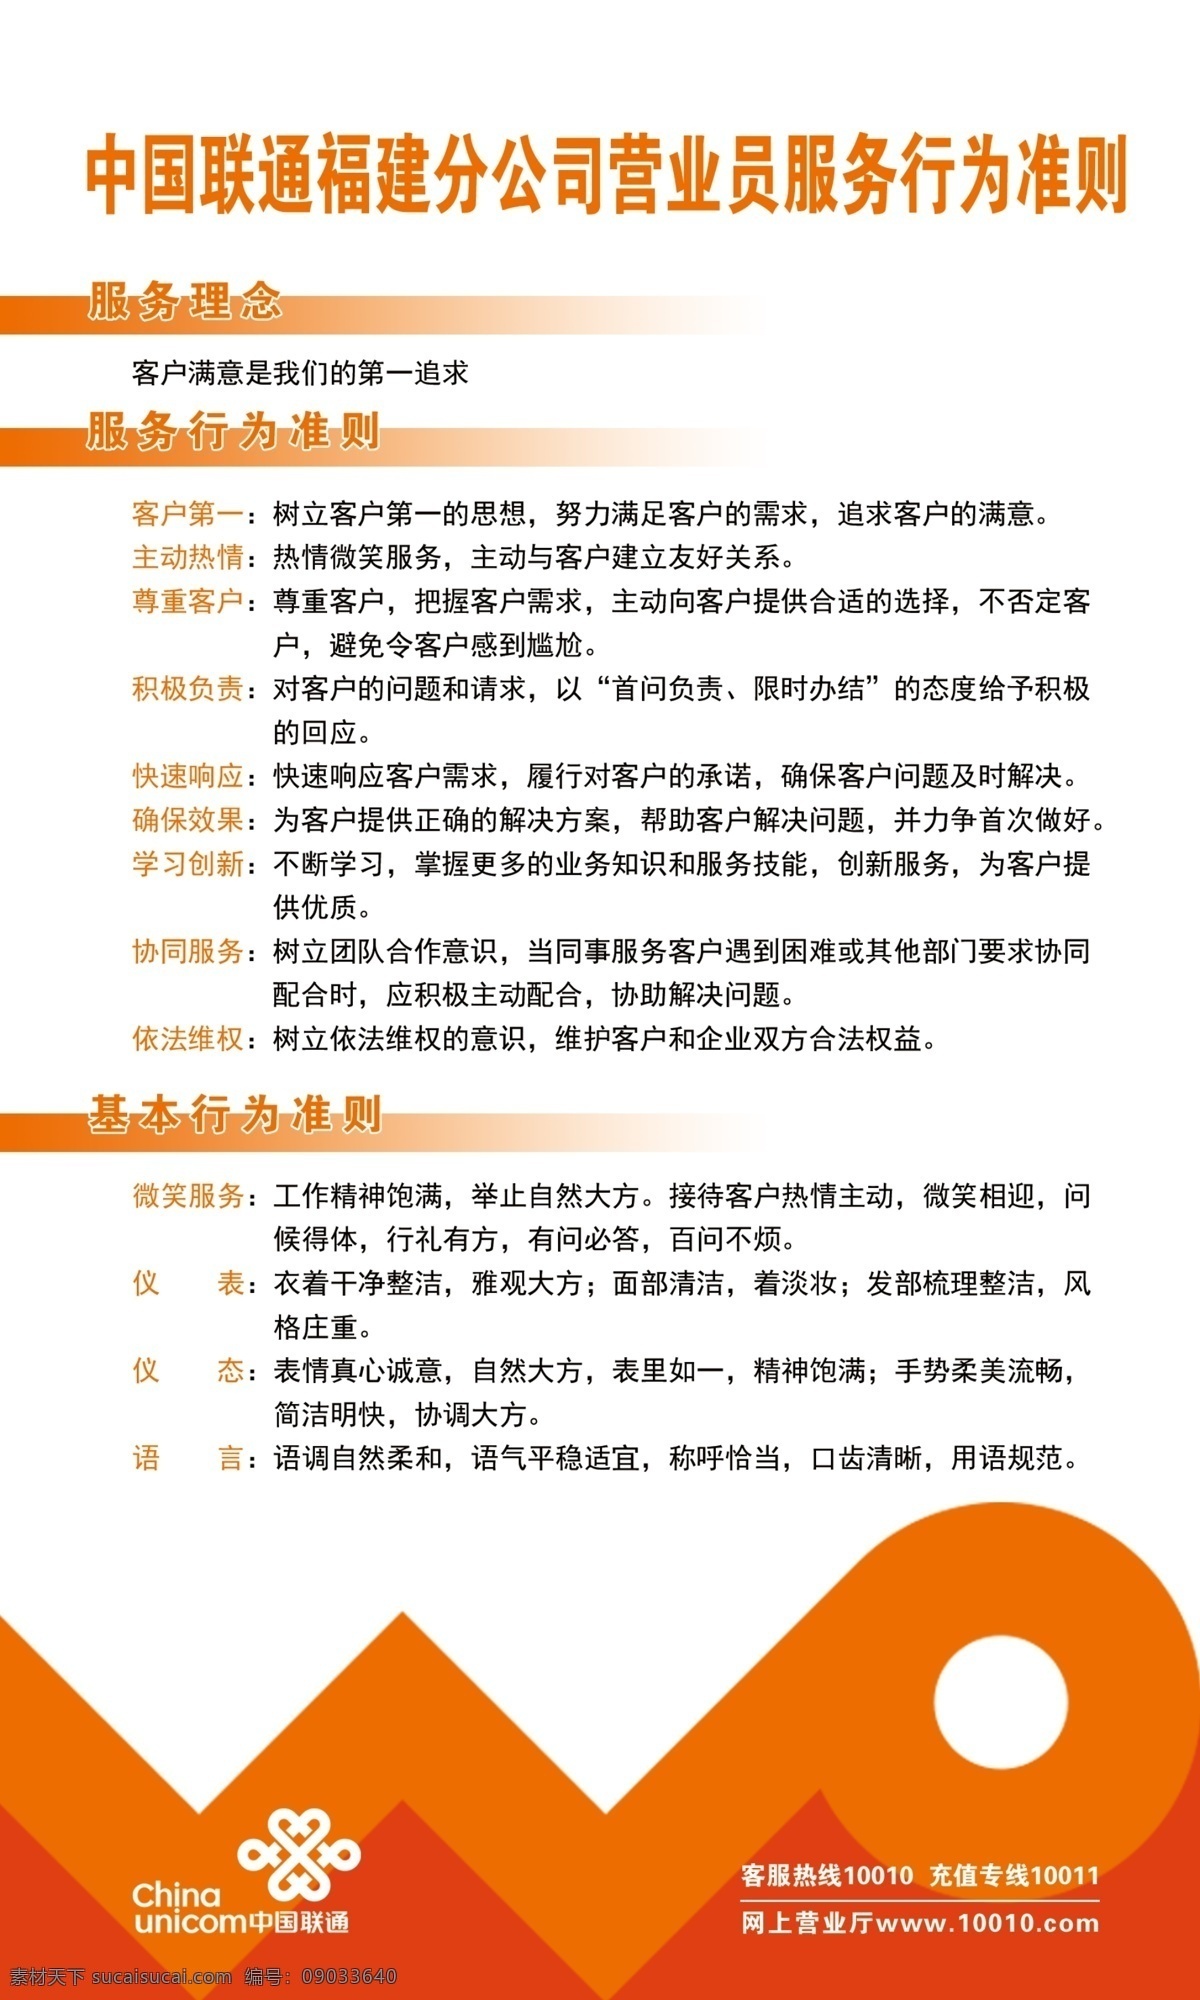 中国联通 服务 行为 准则 服务行为准则 中国联通海报 中国联通背景 中国联通素材 底纹边框 其他素材 分层